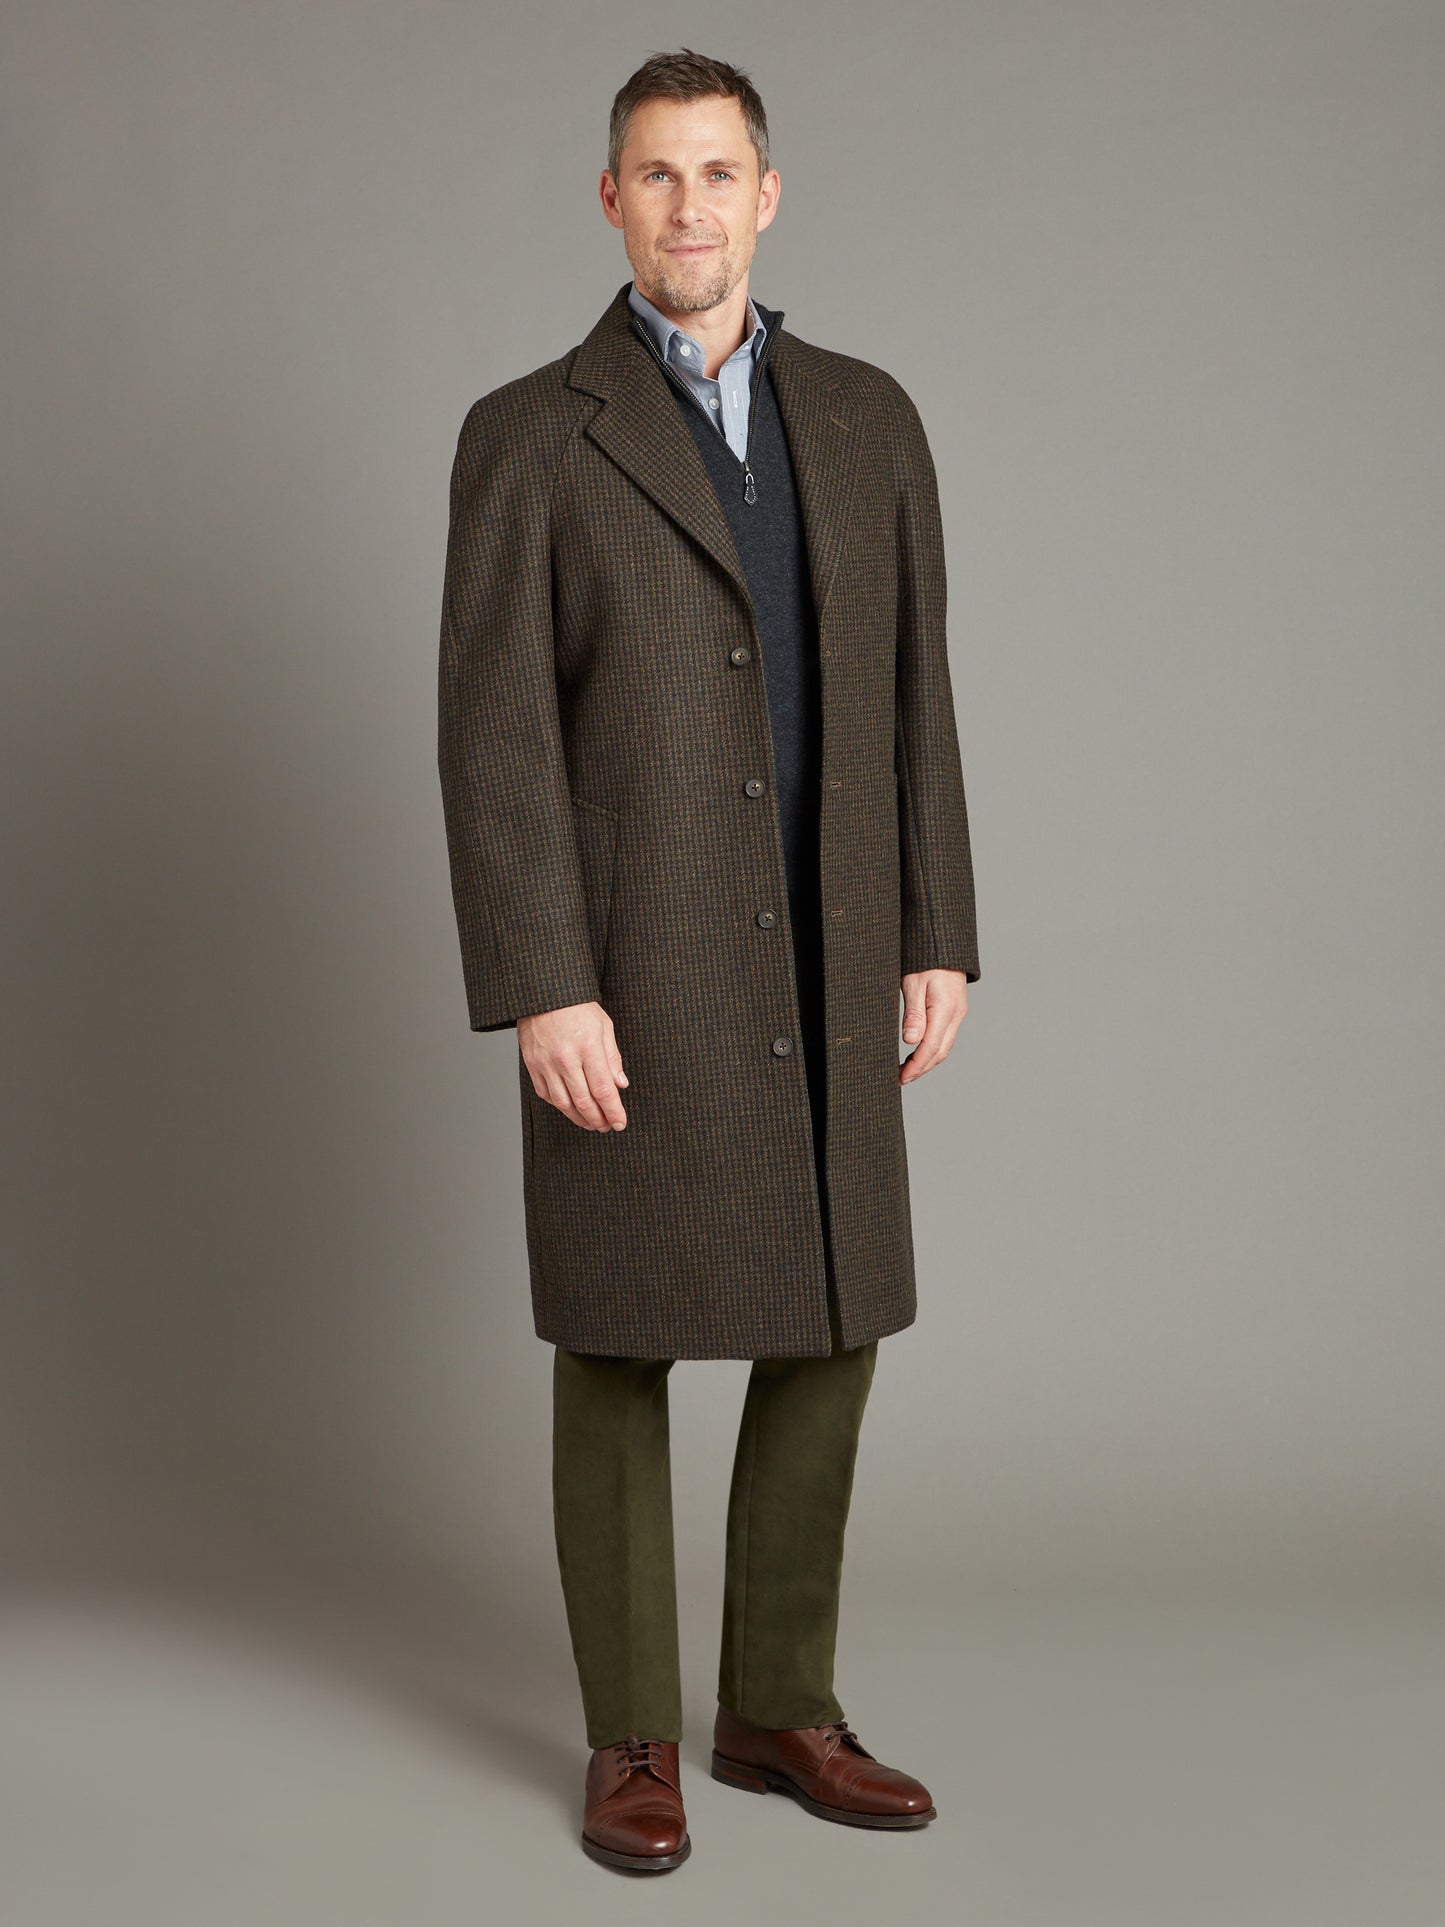 Raglan Sleeve Overcoat Houndstooth - Green/Brown